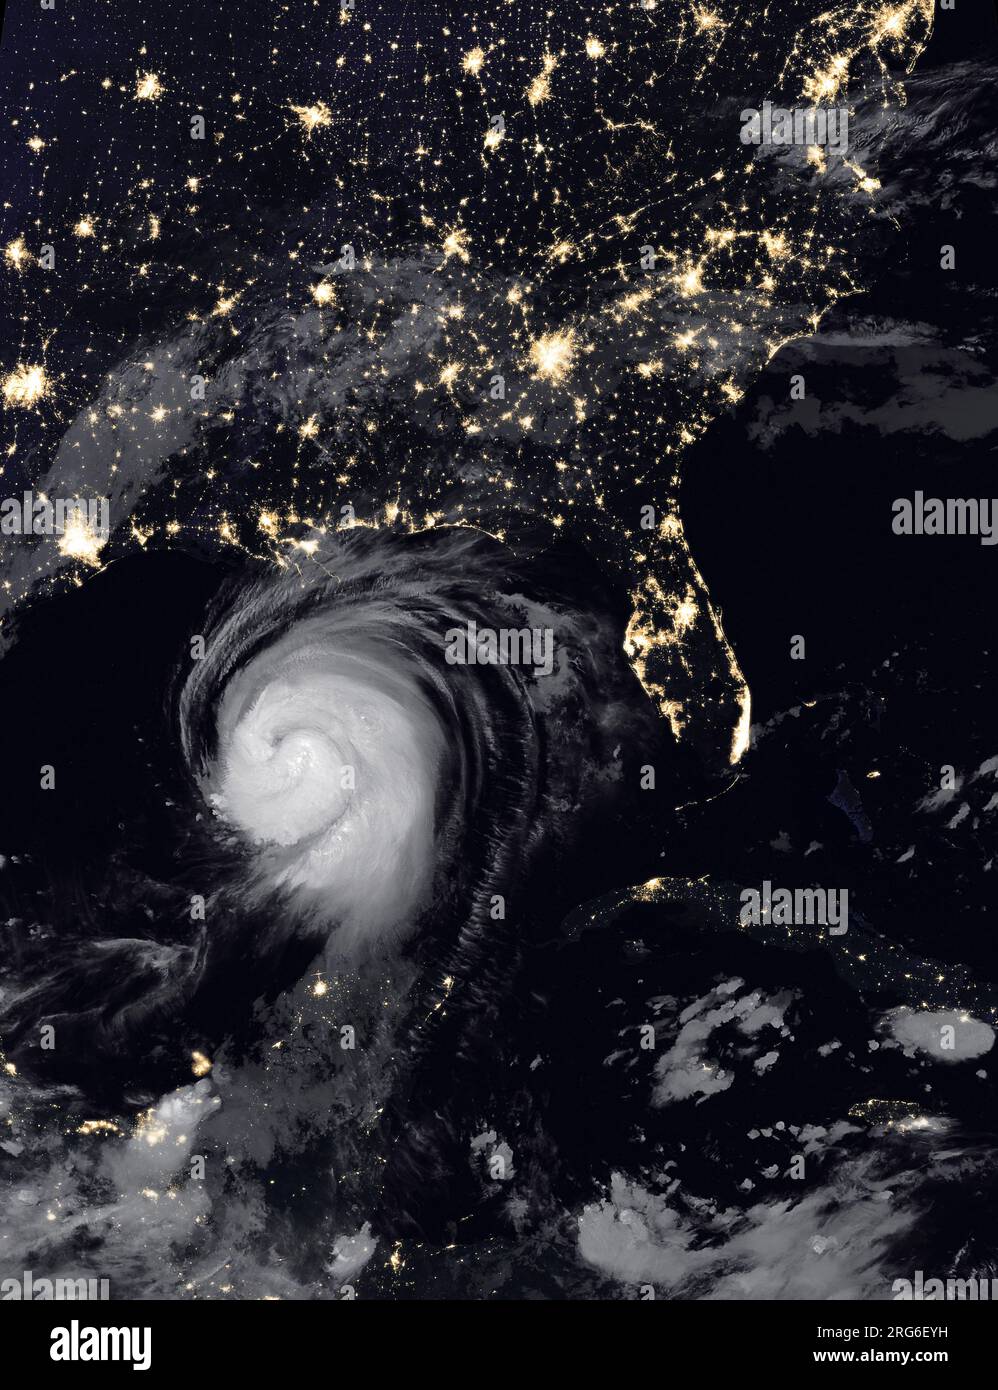 26 août 2020 - l'ouragan Laura s'est superposé à des images composites des lumières de la ville. Banque D'Images